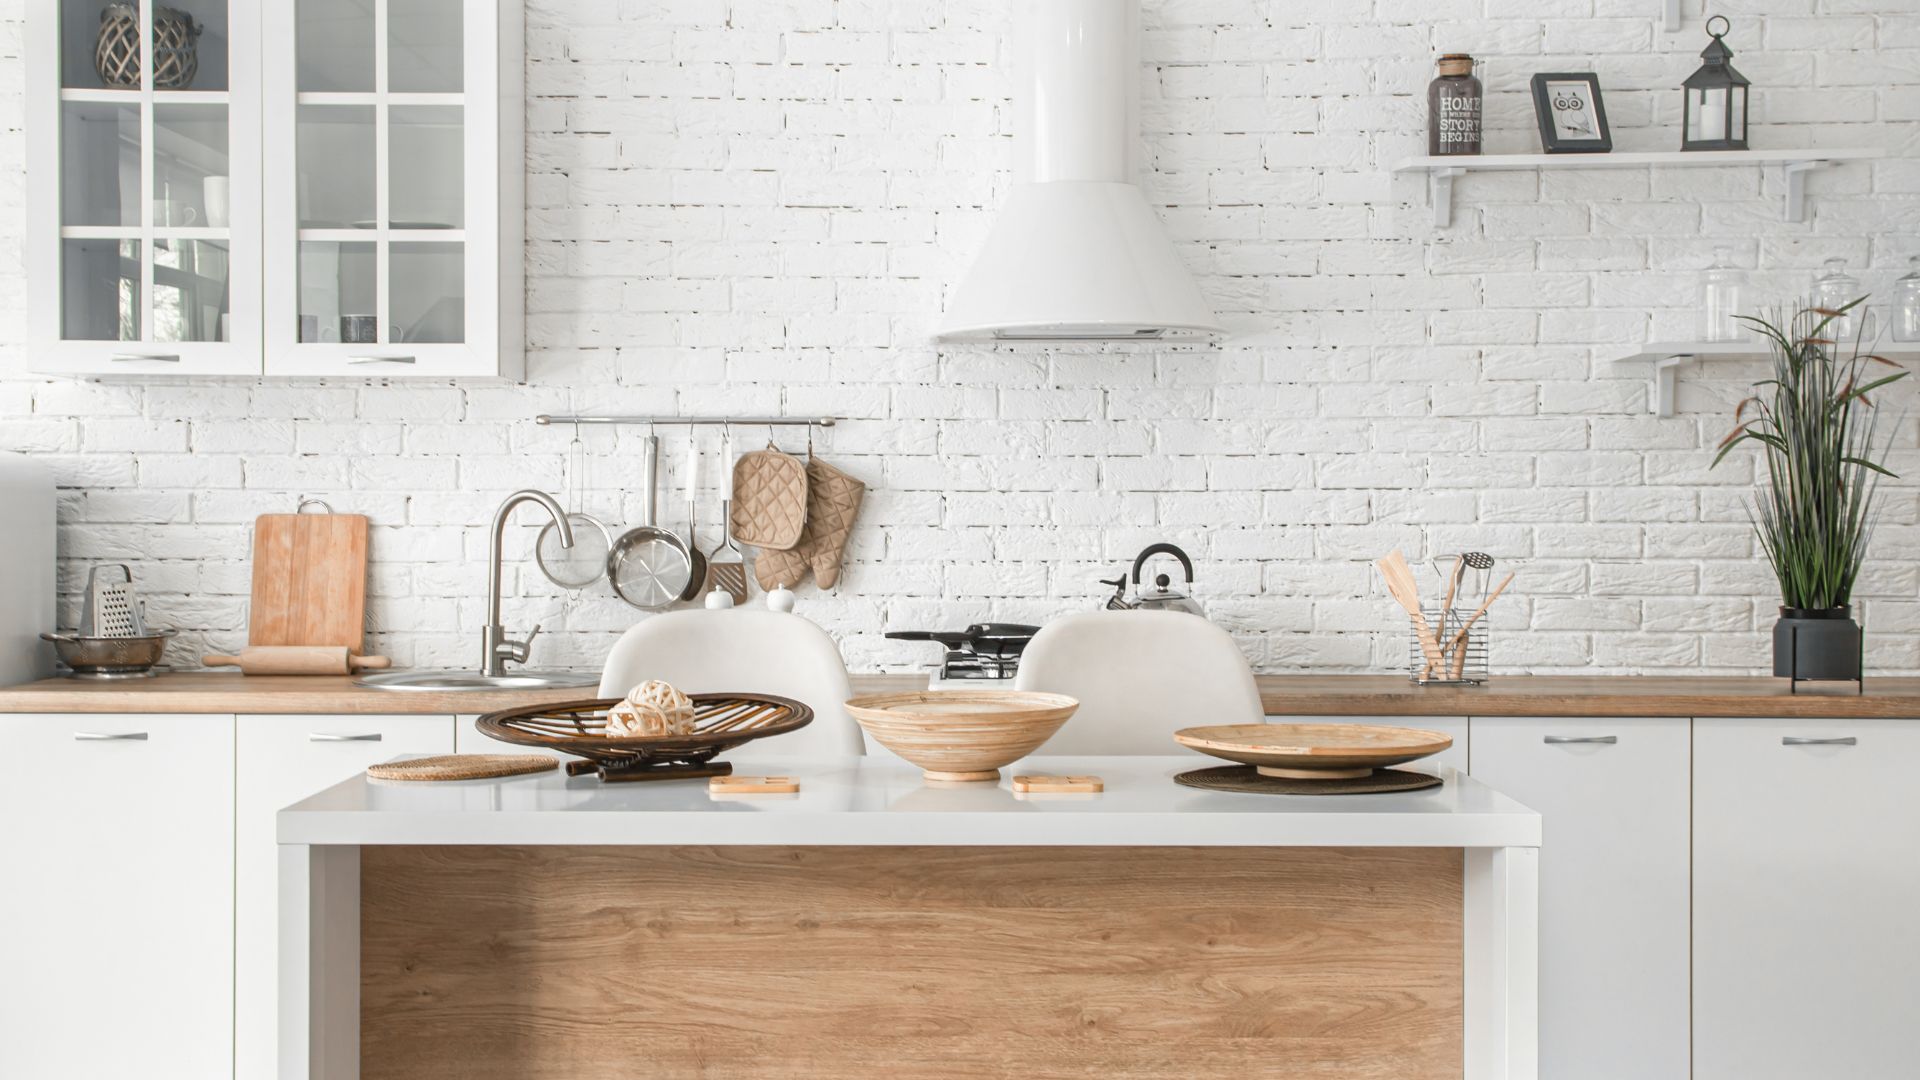 handleless-kitchen-cabinets-embrace-scandinavian-minimalism